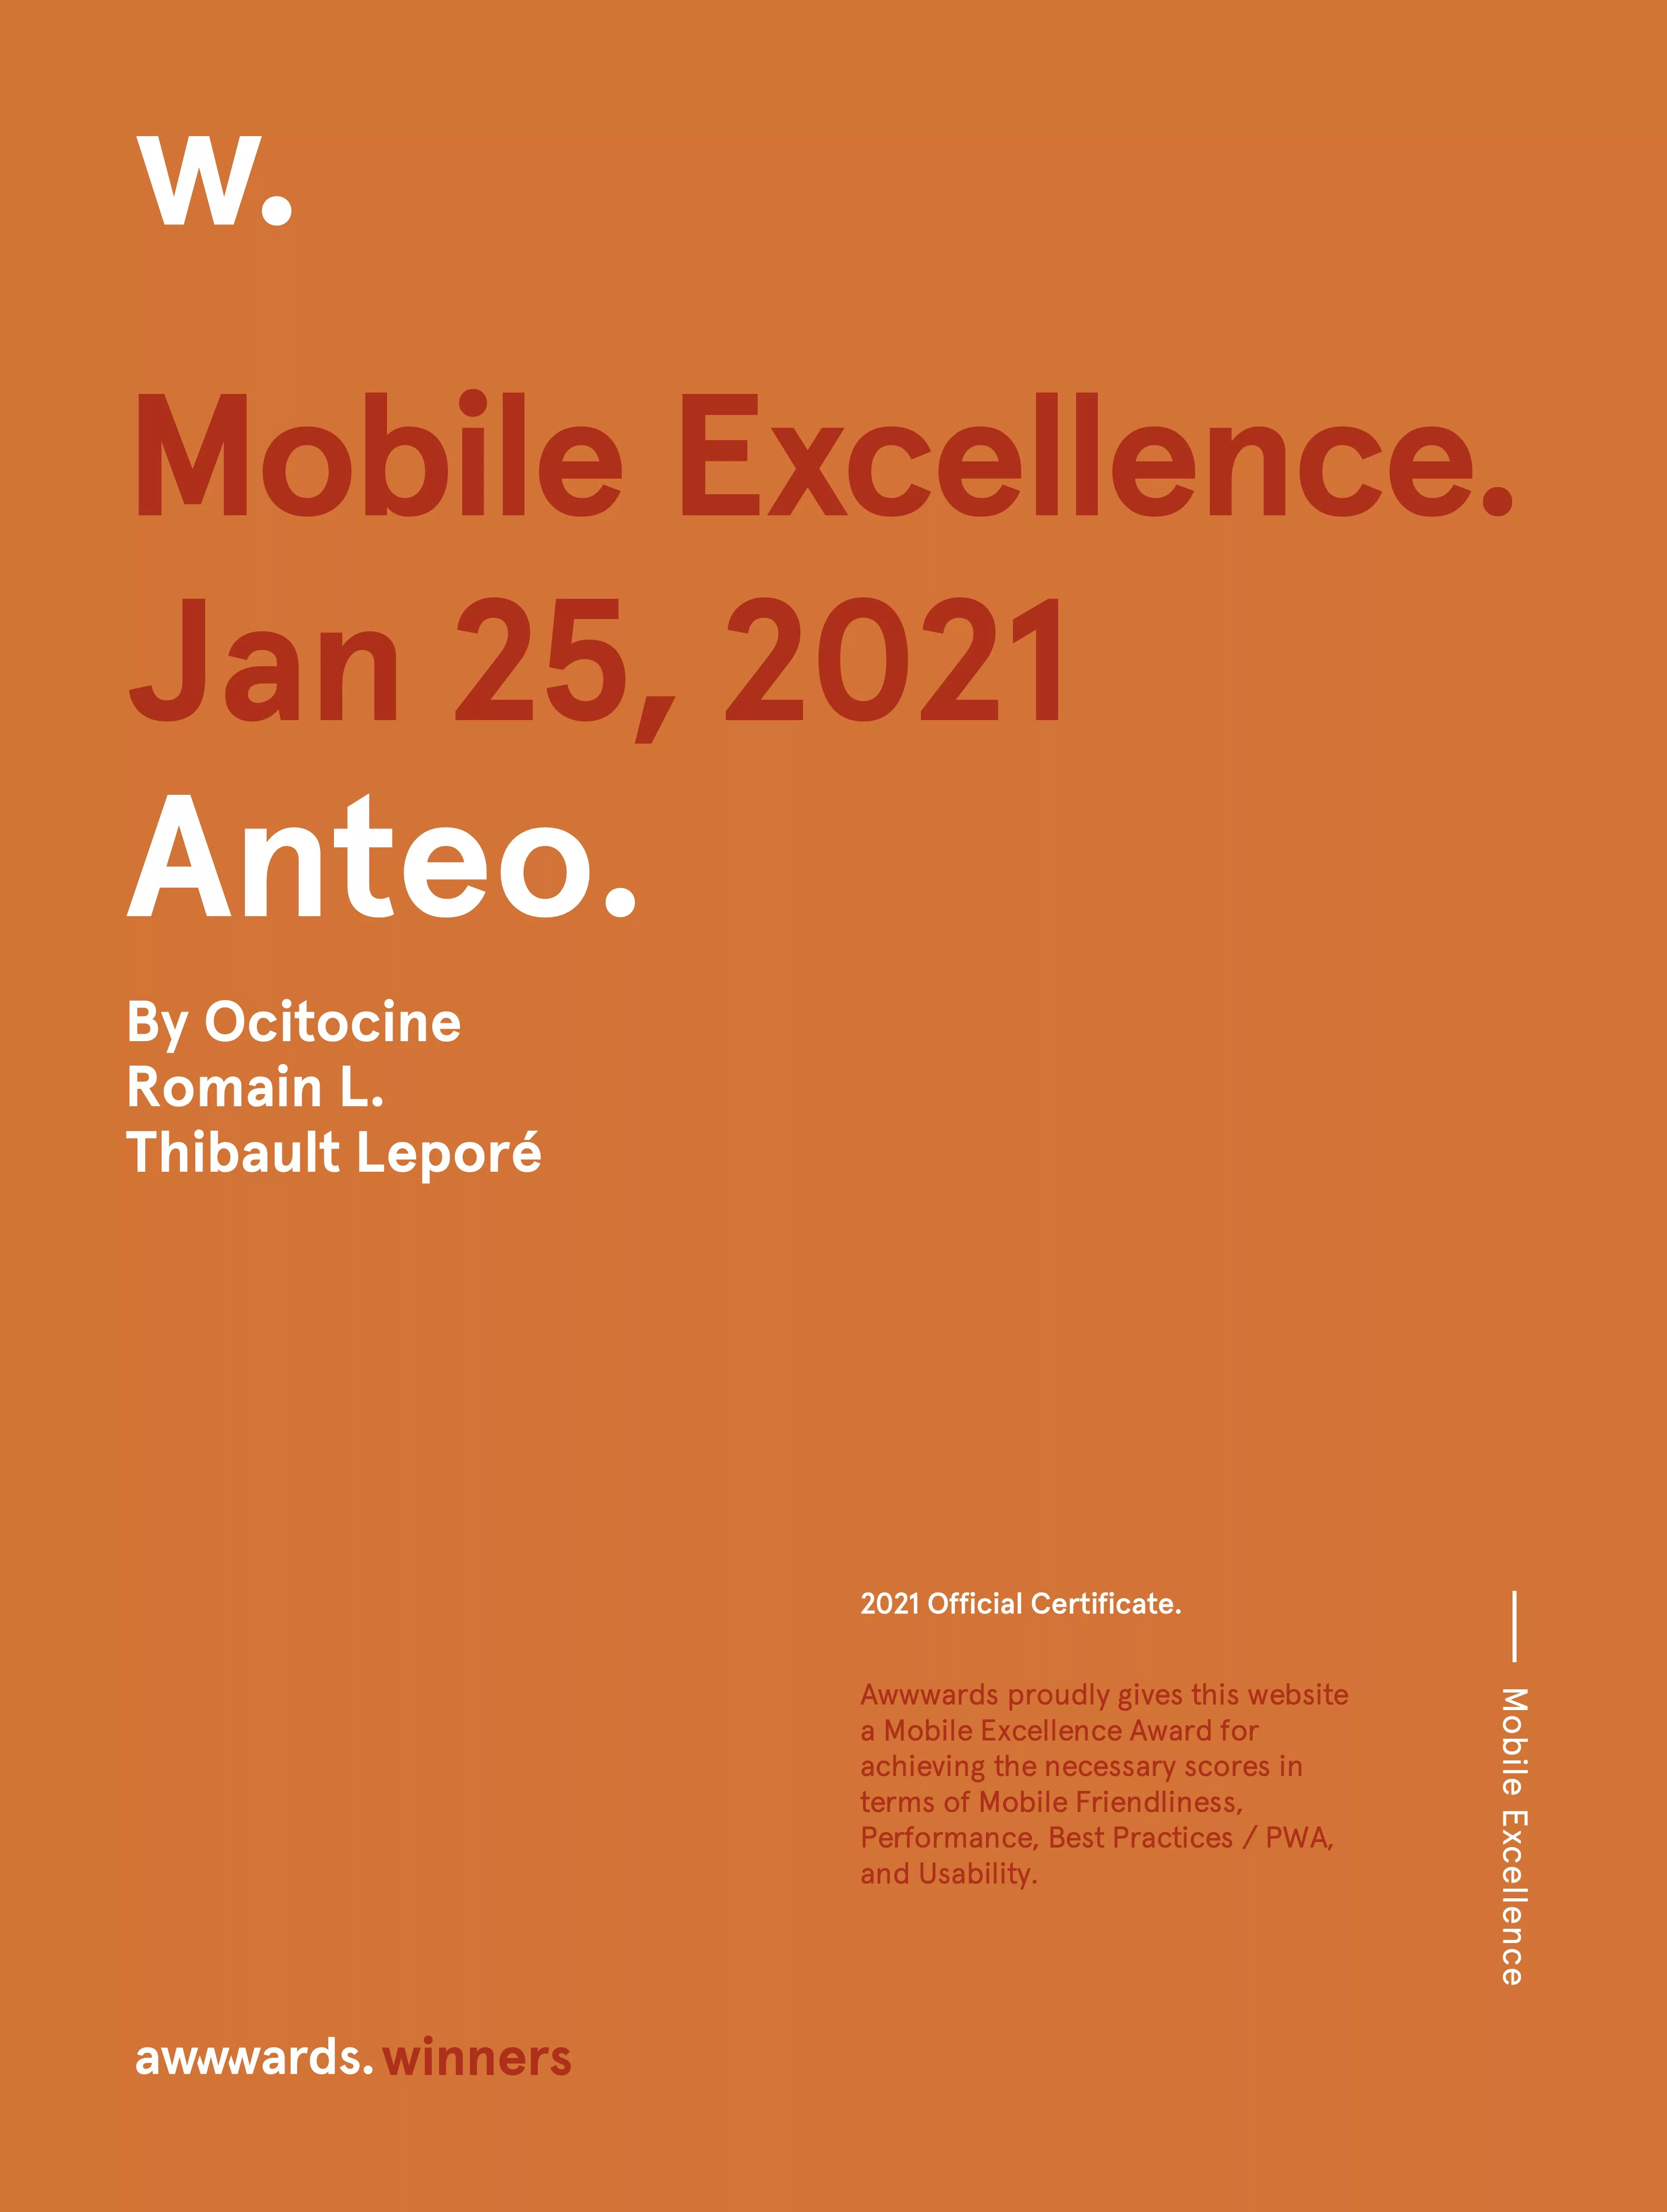 Ocitocine, agence créative web et branding, a remporté un prix "Awwwards Mobile Excellence" pour la réalisation du site web anteo.pro